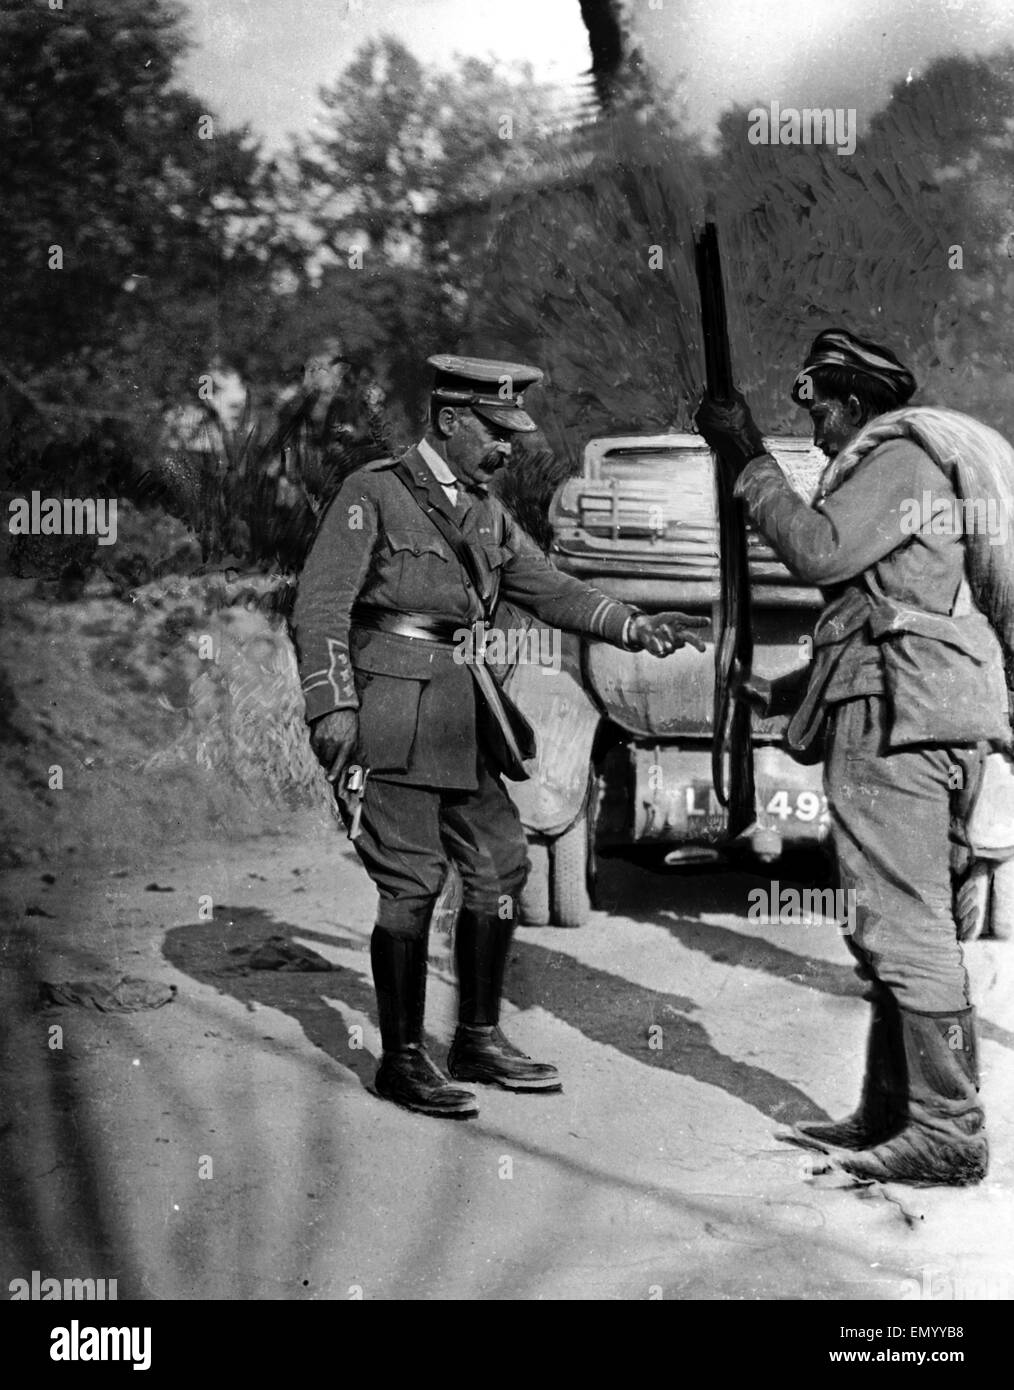 Riga, der Chef russische Hafenstadt an der Ostsee & ist jetzt in die Hände des Feindes Circa August 1917 gefallen. Zeitung-Beschriftung: Britischer Offizier gibt eine Gewehr, einem russischen Soldat. Stockfoto